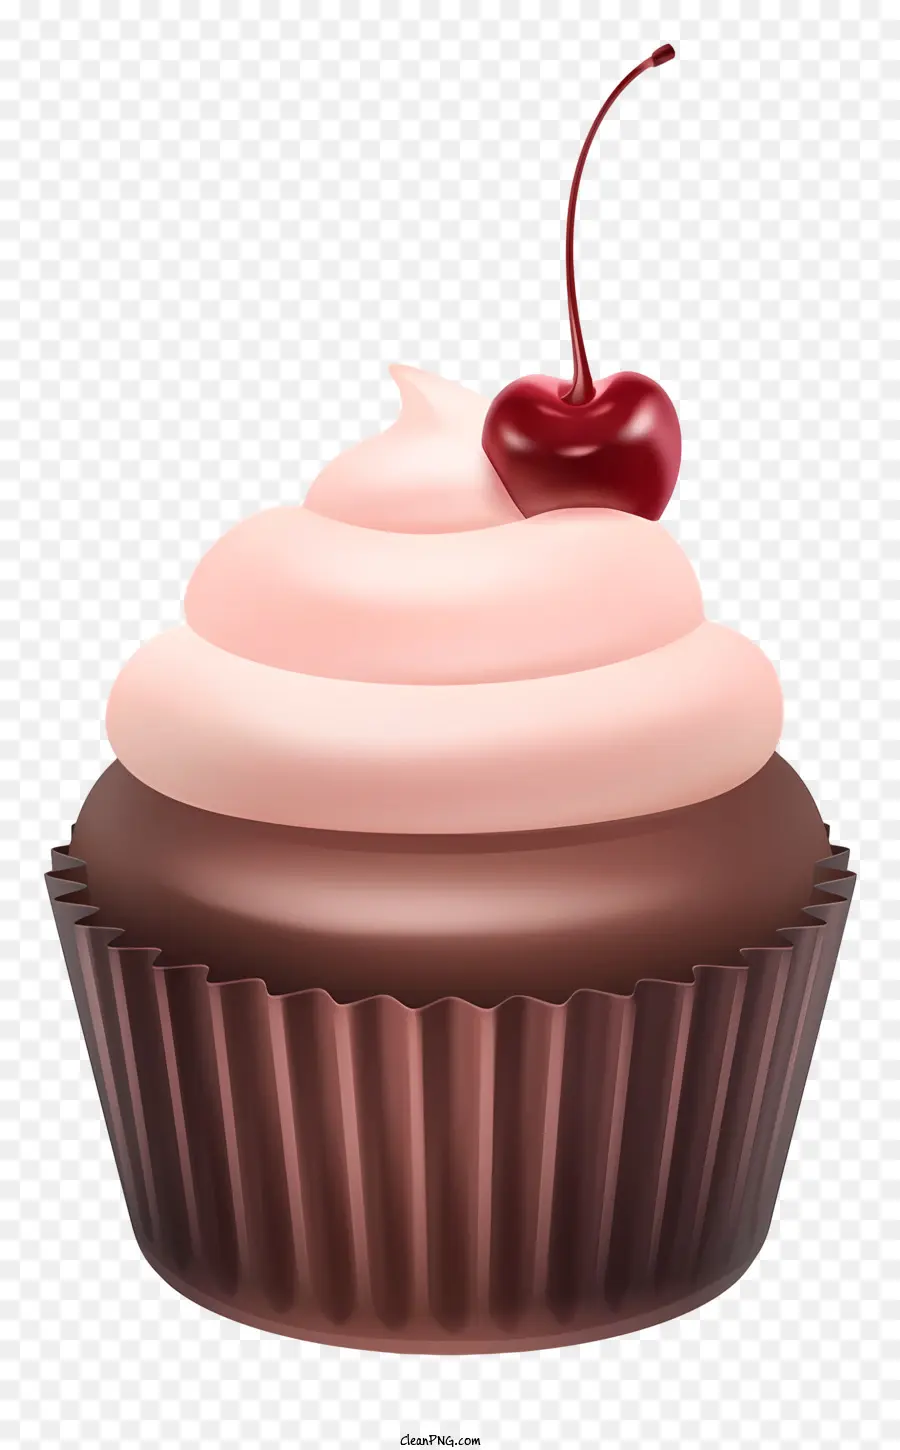 Schokoladen -Cupcake -Schokoladenfrostkirsche auf dunklen Hintergrund frische und saftige Kirsche - Perfekt gebackener Schokoladencupcake mit glänzendem Zuckerguss